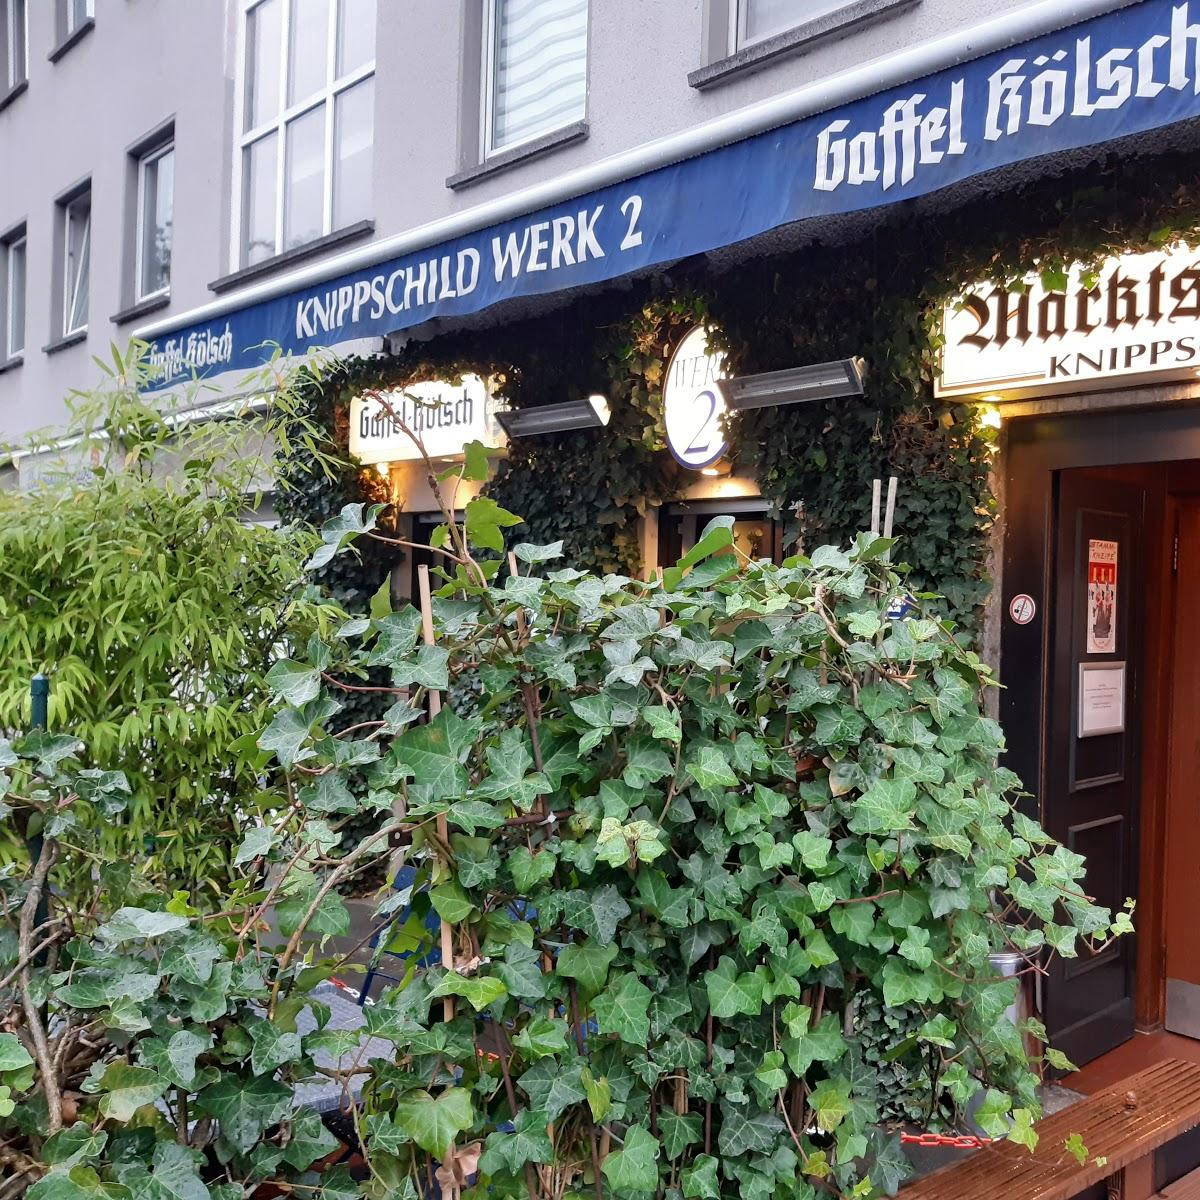 Restaurant "Knippschild Werk 2" in Köln